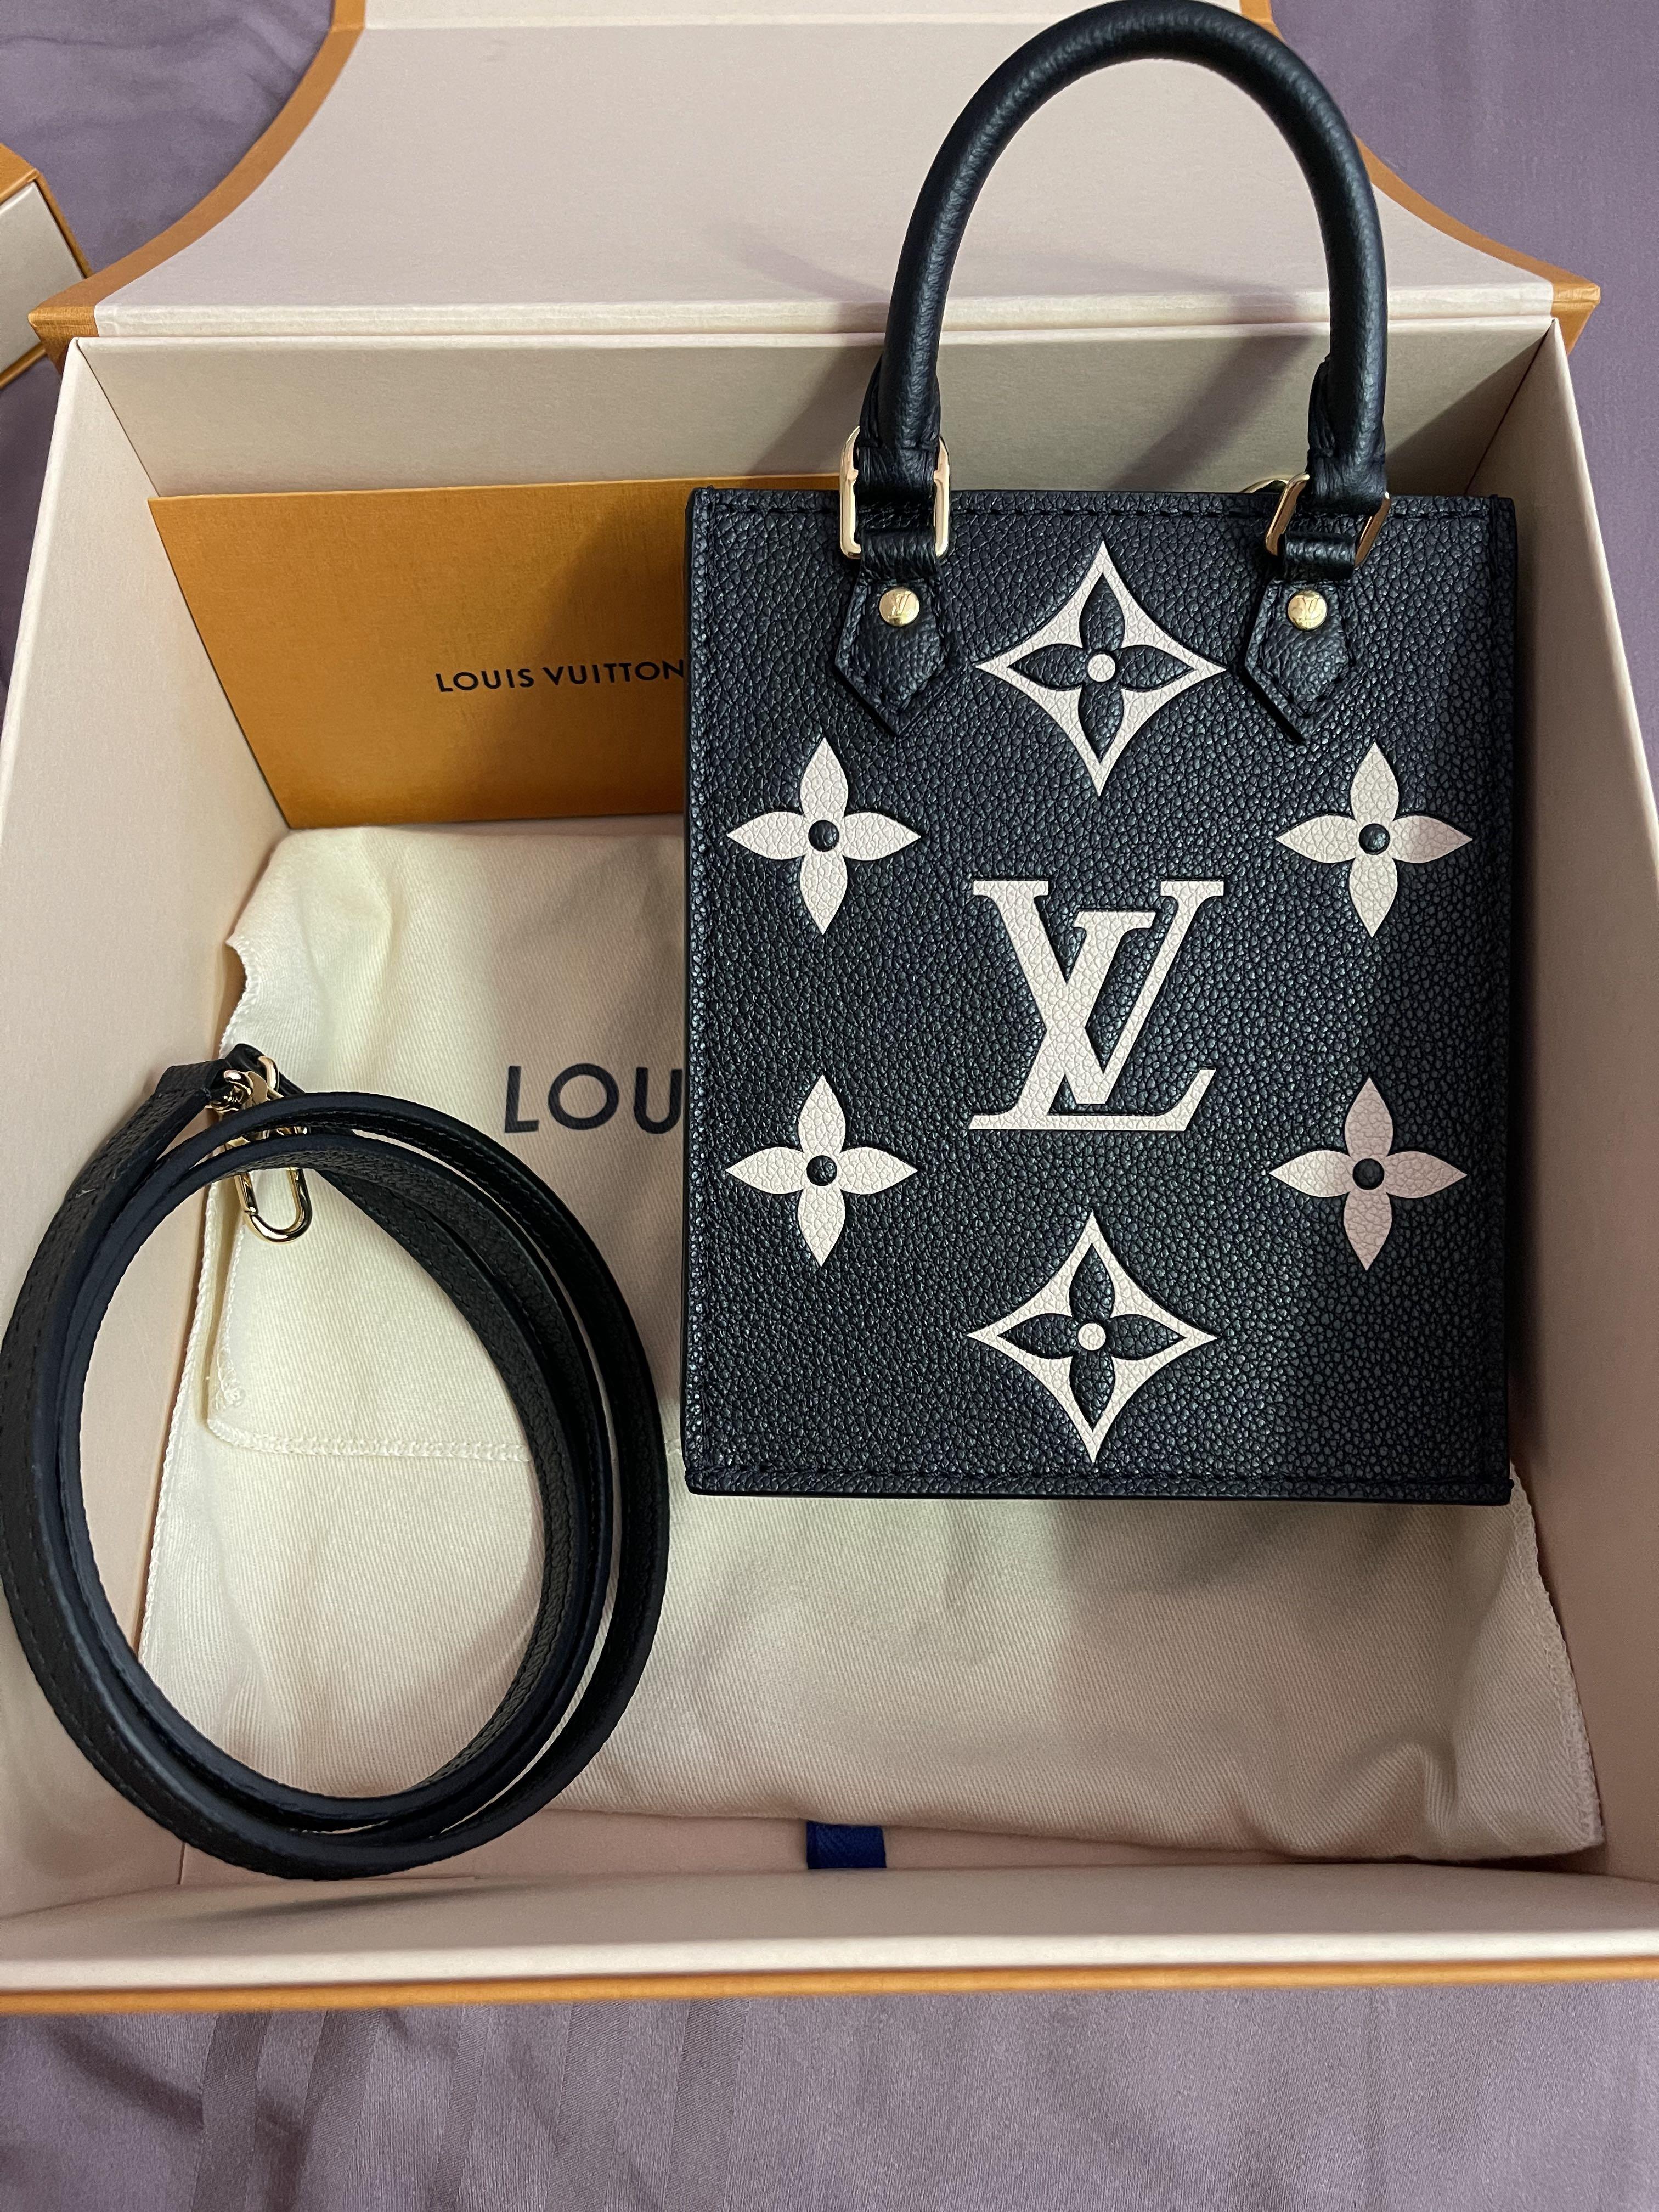 Unboxing & Honest Review on Louis Vuitton Petit Sac Plat Mini Bag